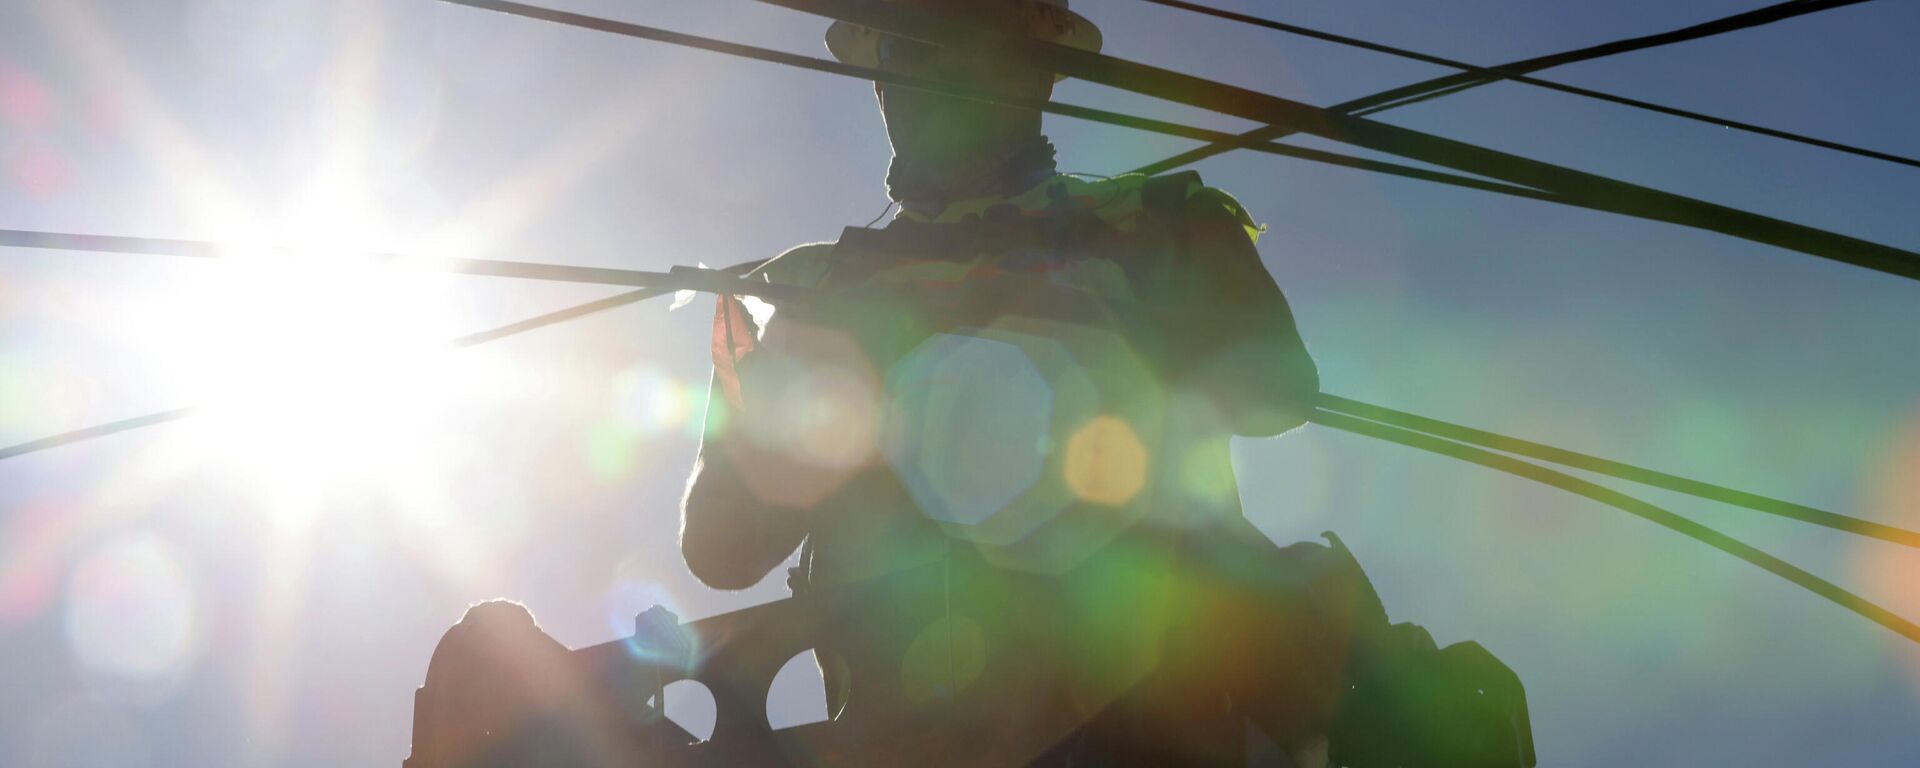 Trabajador restaura el cableado eléctrico durante la ola de calor que azota América del Norte, en Washington, en junio del 2021 - Sputnik Mundo, 1920, 02.07.2021